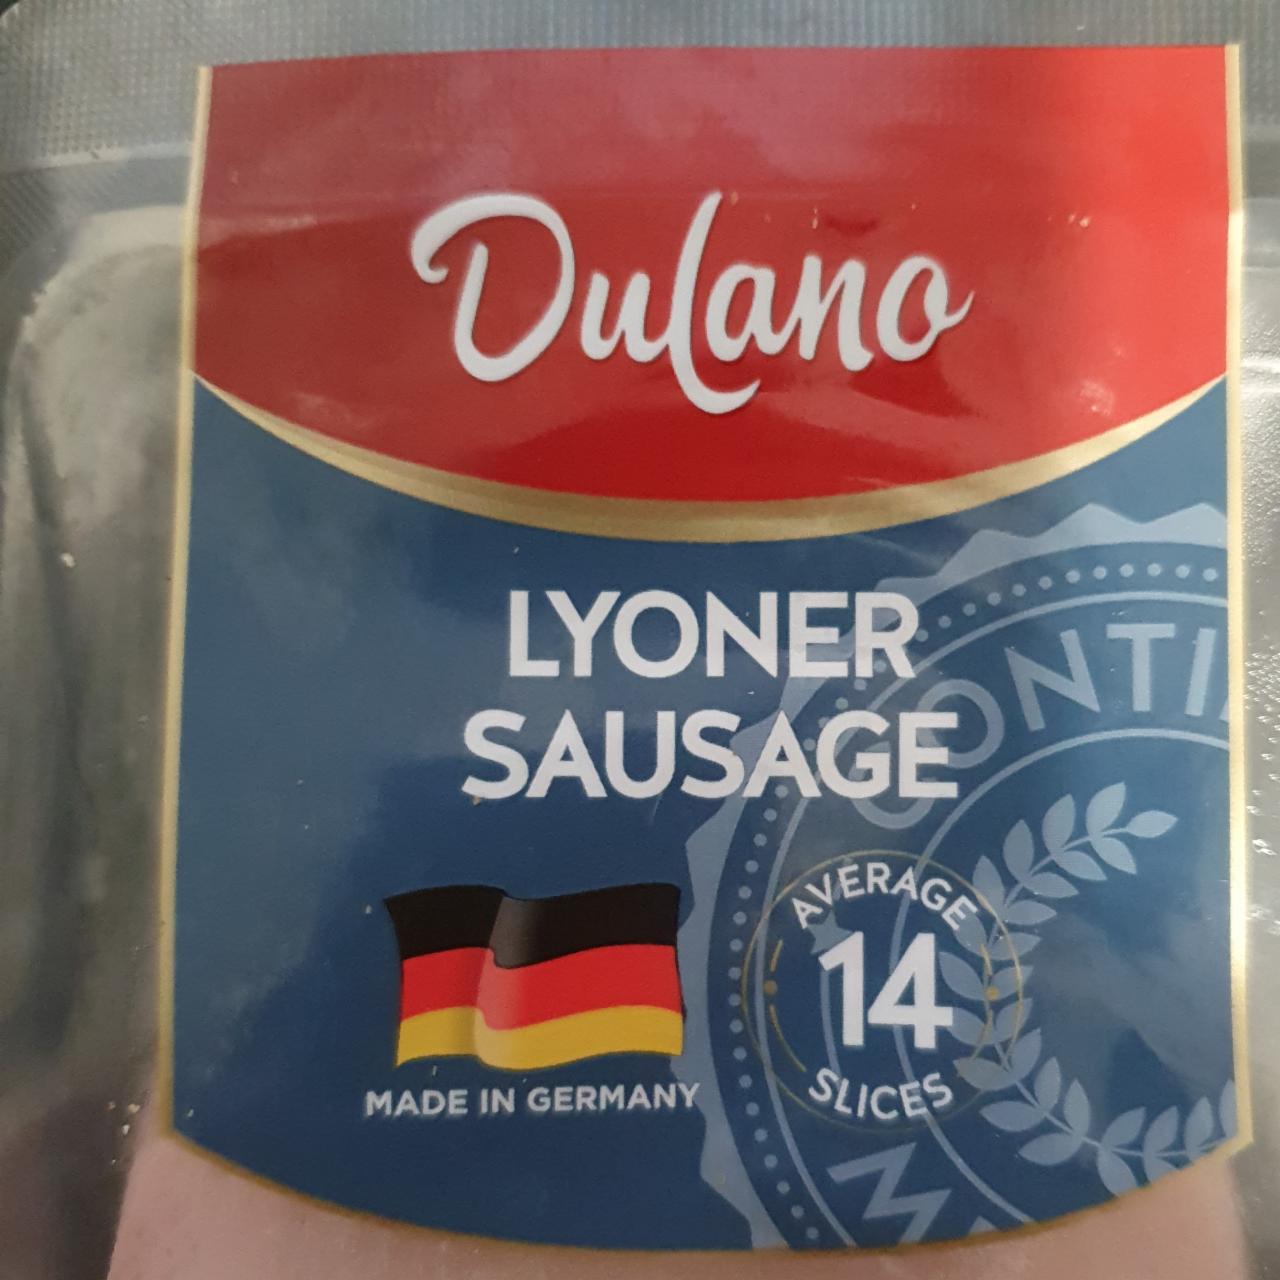 Lyoner sausage Dulano - kalorie, kJ a nutriční hodnoty